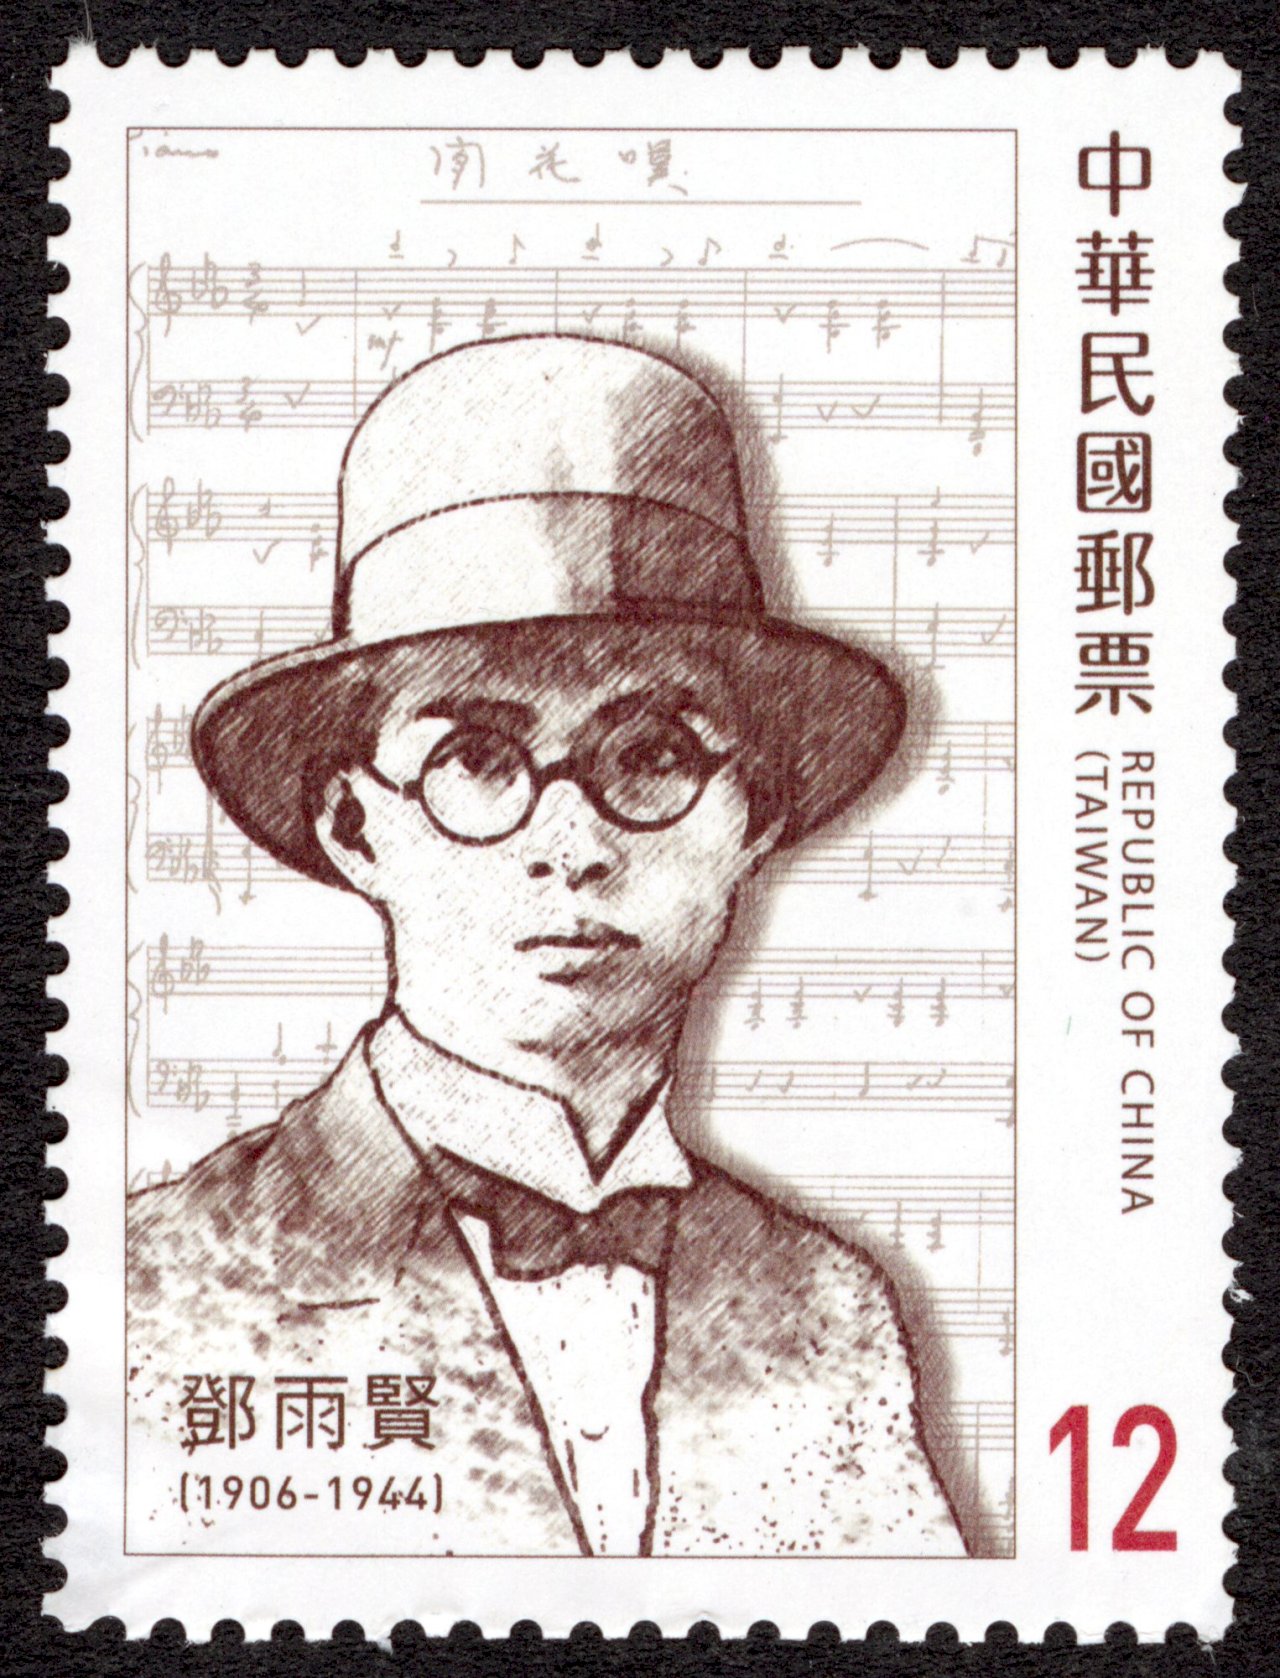 台灣近代傑出作曲家郵票首度發行  鄧雨賢、許石入列